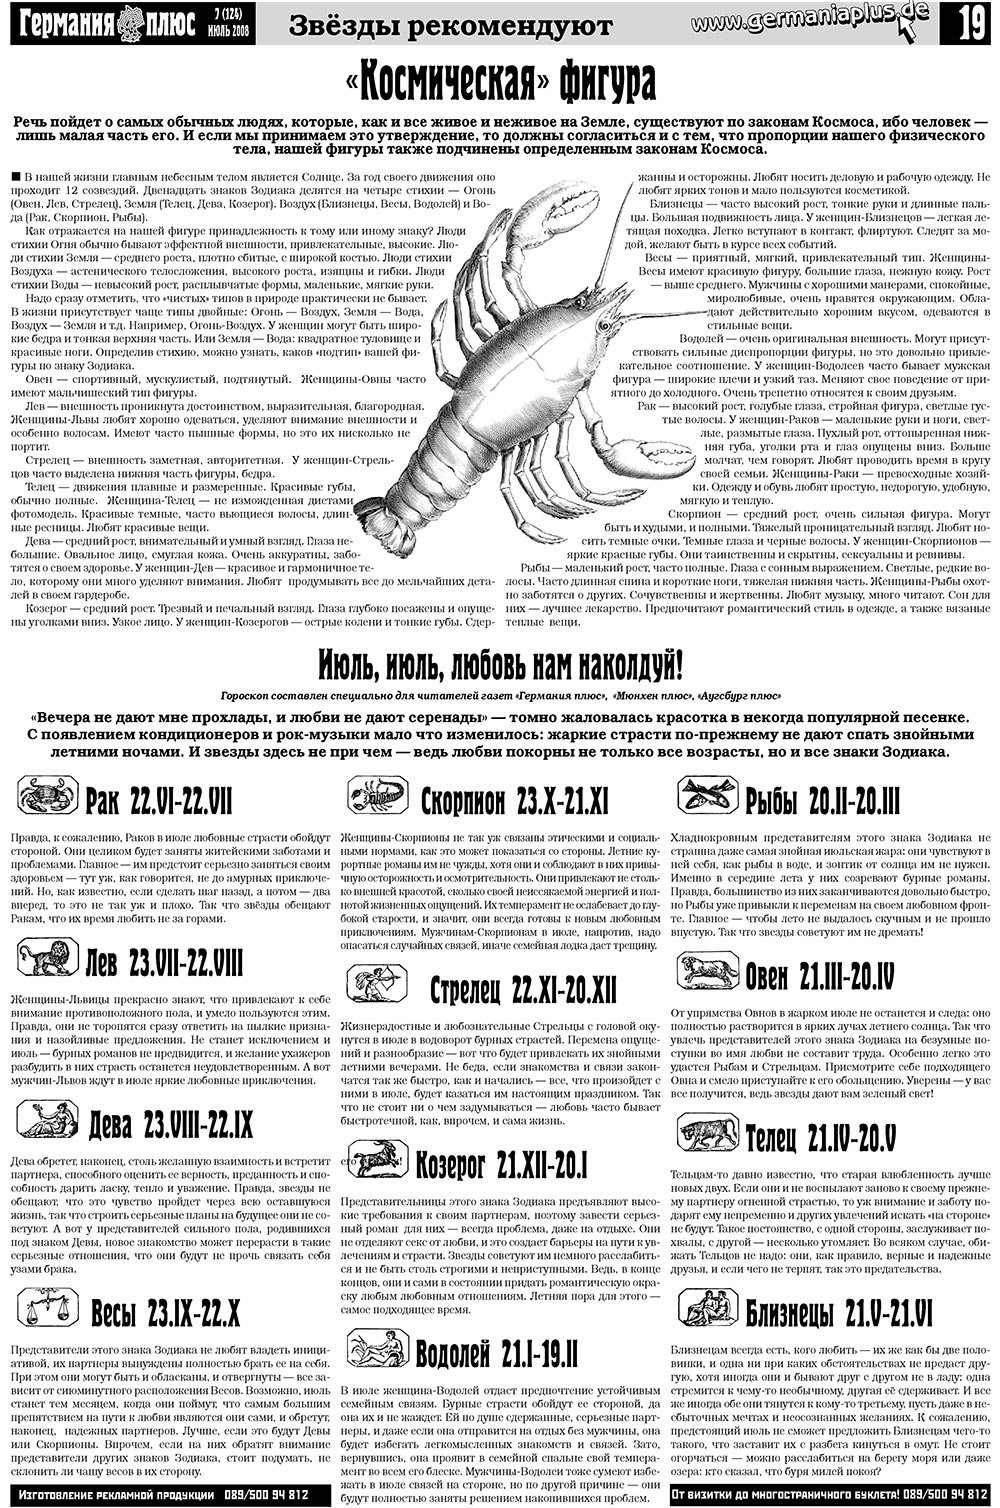 Германия плюс (газета). 2008 год, номер 7, стр. 23